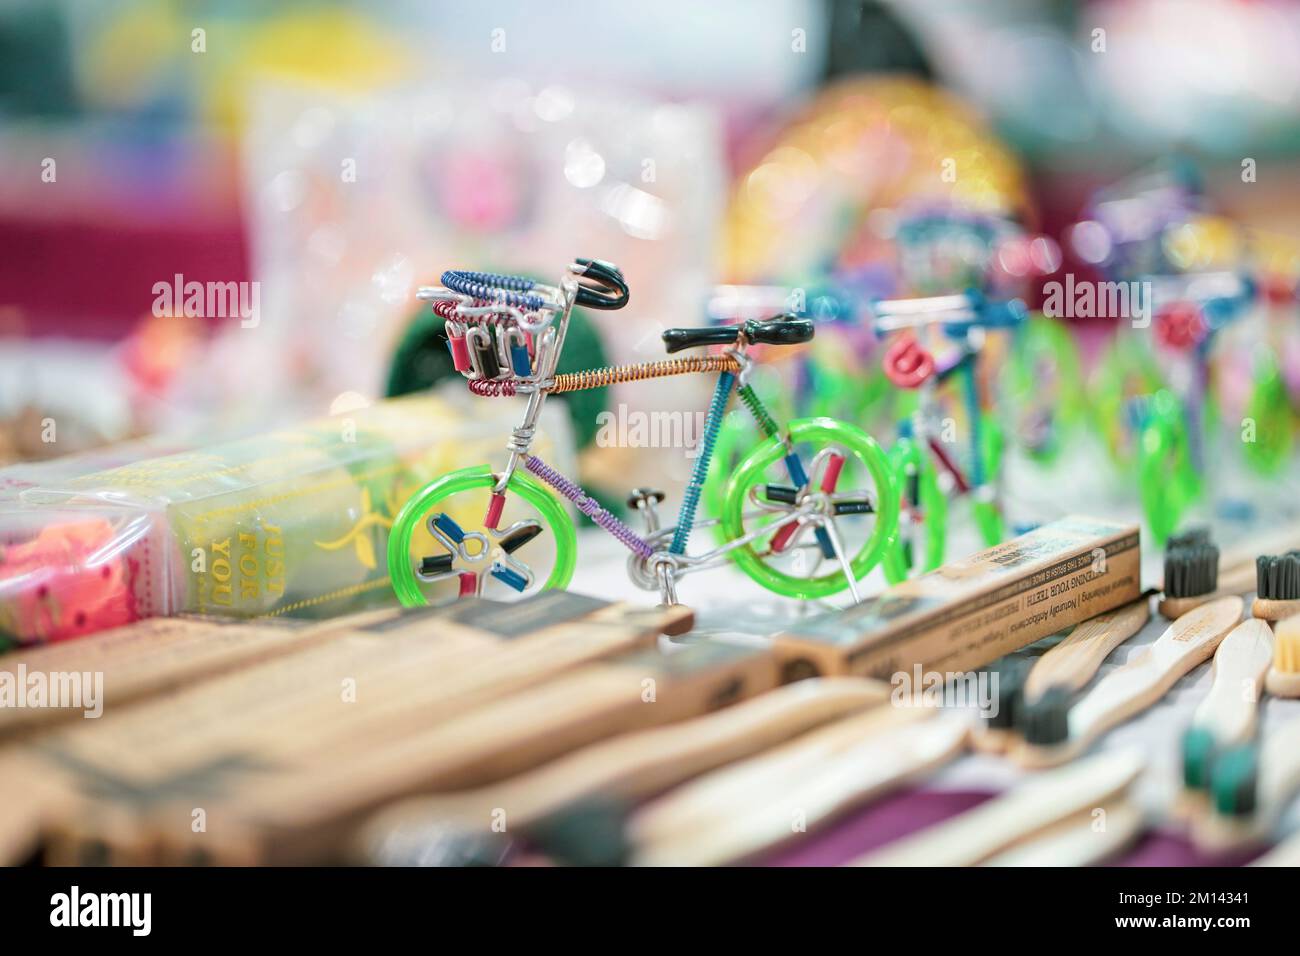 Ein Spielzeug mit grünem Farbzyklus, das handgefertigt ist mit Kinderspielzeug aus Aluminium in grüner Farbe, das auf dem Markt, auf einer Messe, im Einkaufszentrum oder im Geschäft verkauft wird Stockfoto